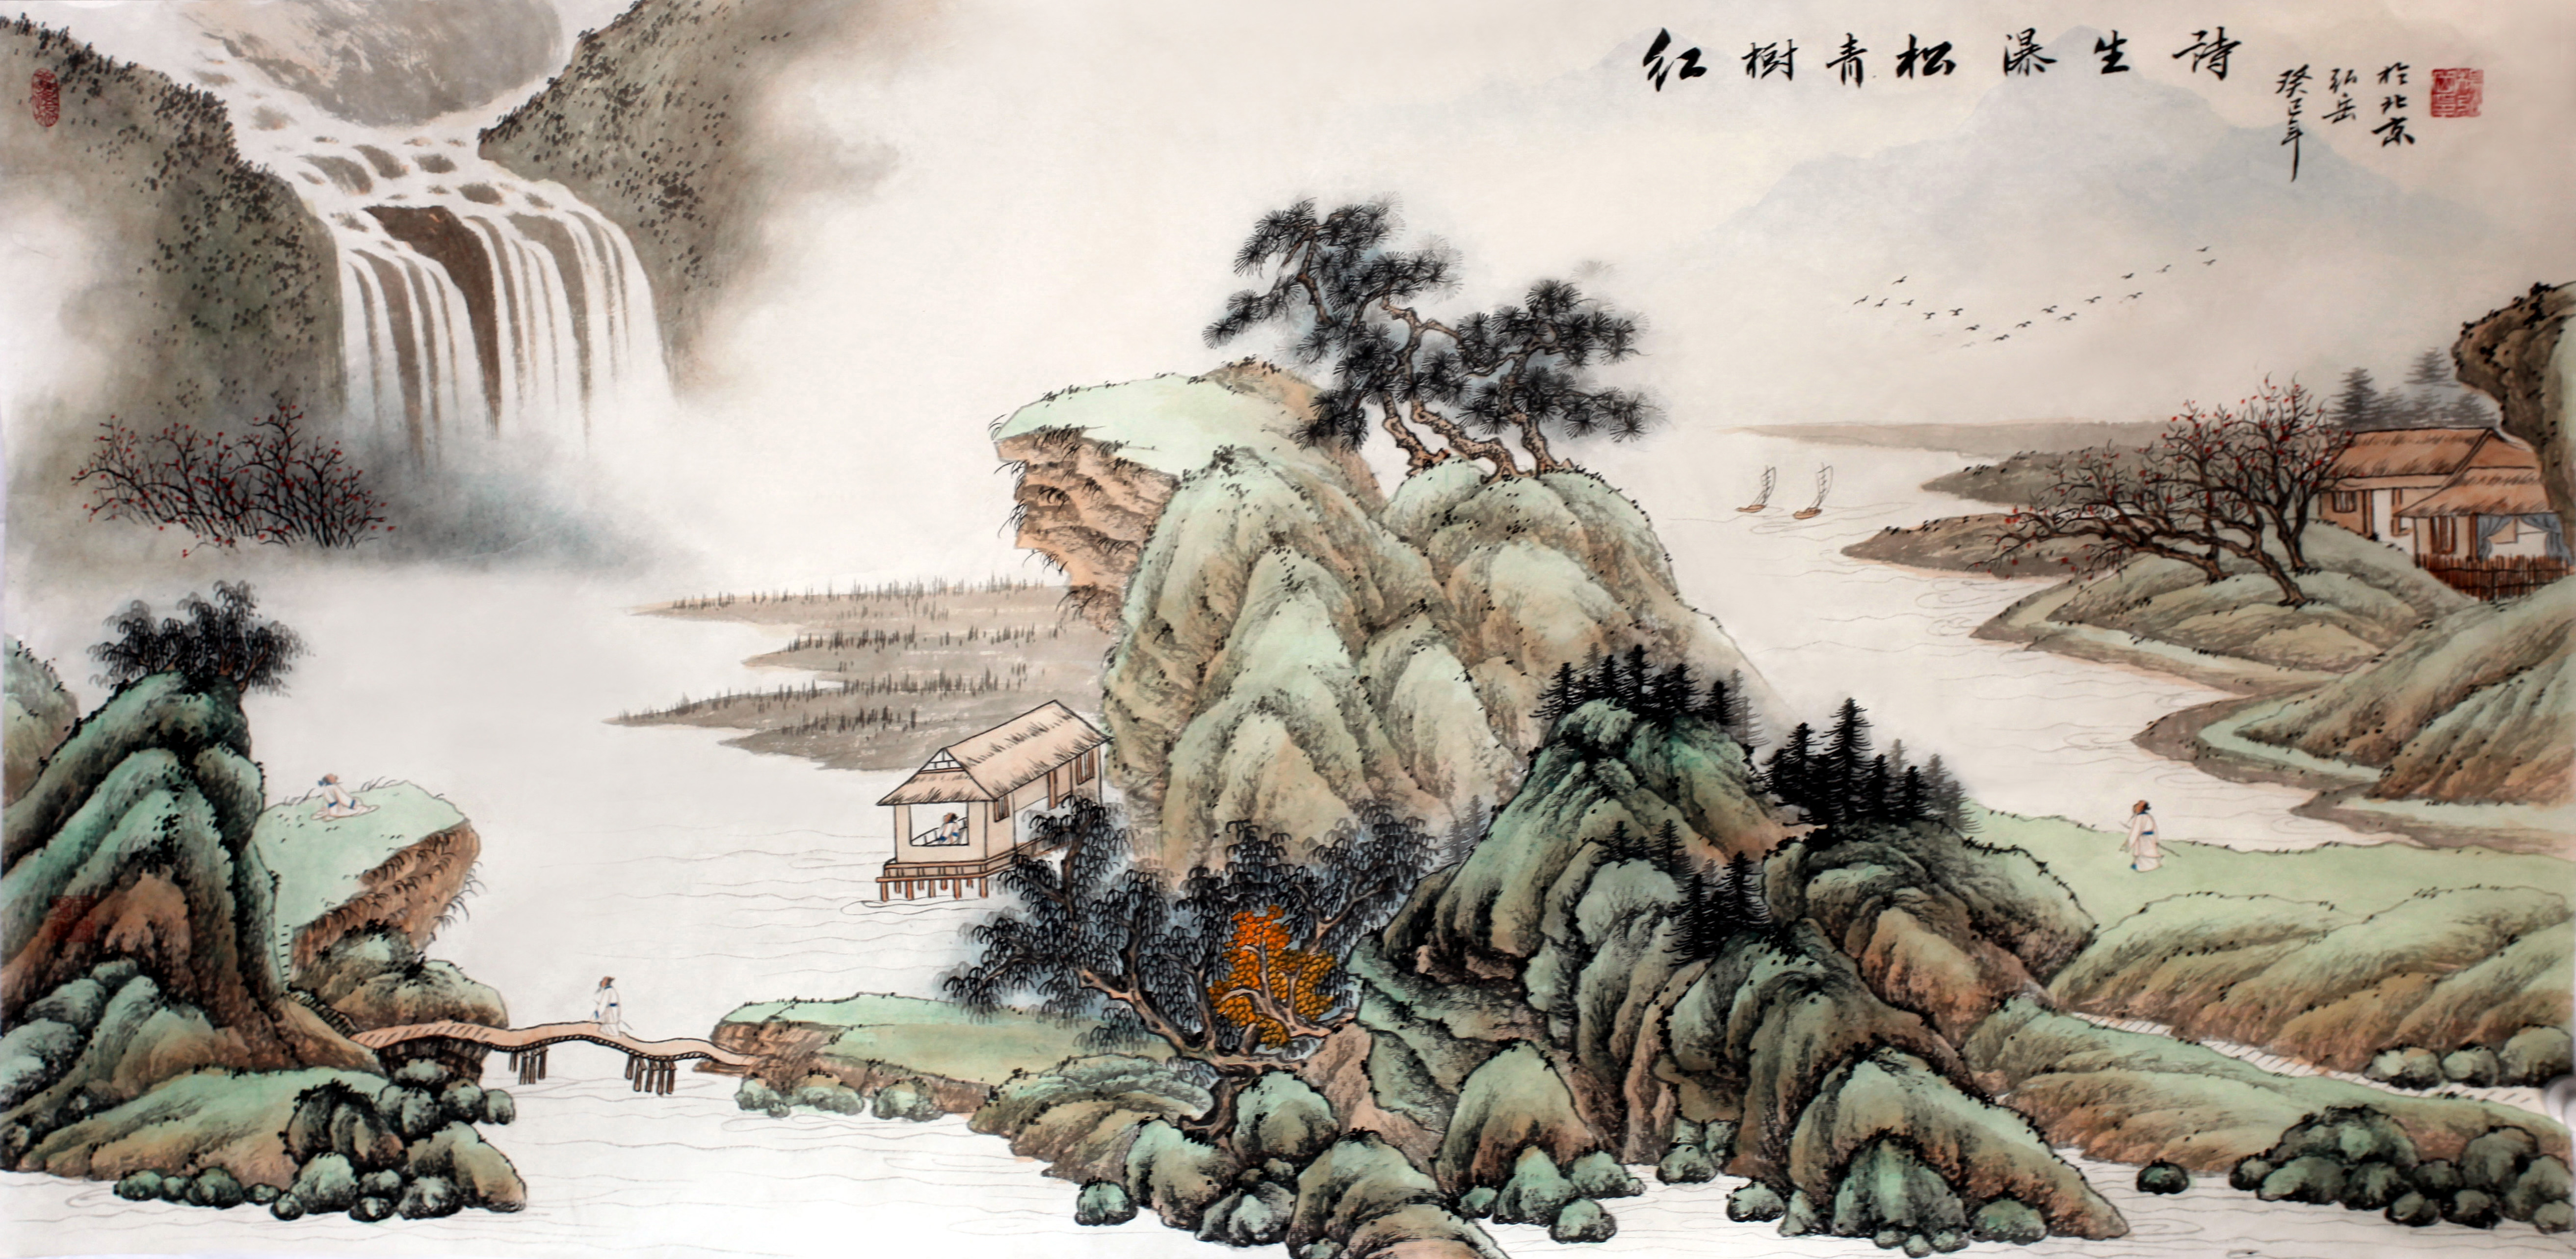 中国画中,我们可以集中体味中国画的意境,格调,气韵和色调,山水画5250